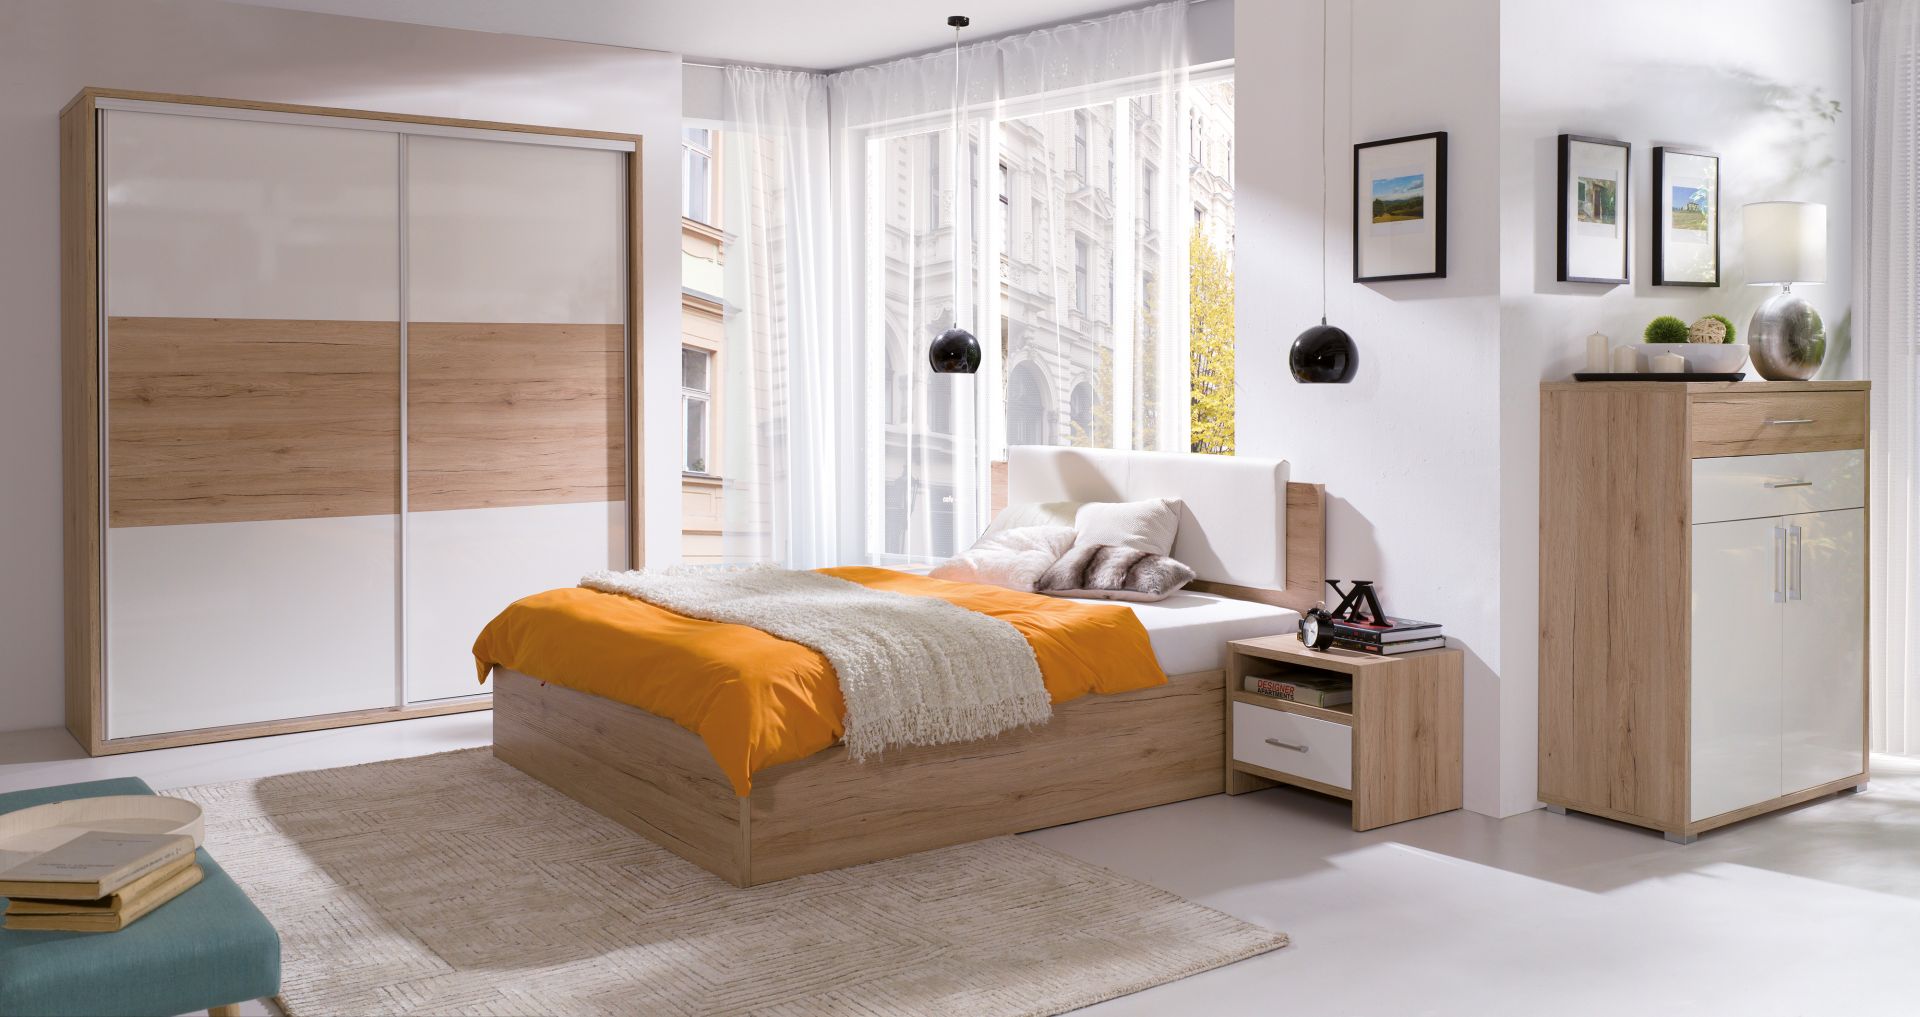 Pola to kolekcja minimalistycznych mebli do sypialni. Fot. Wajnert